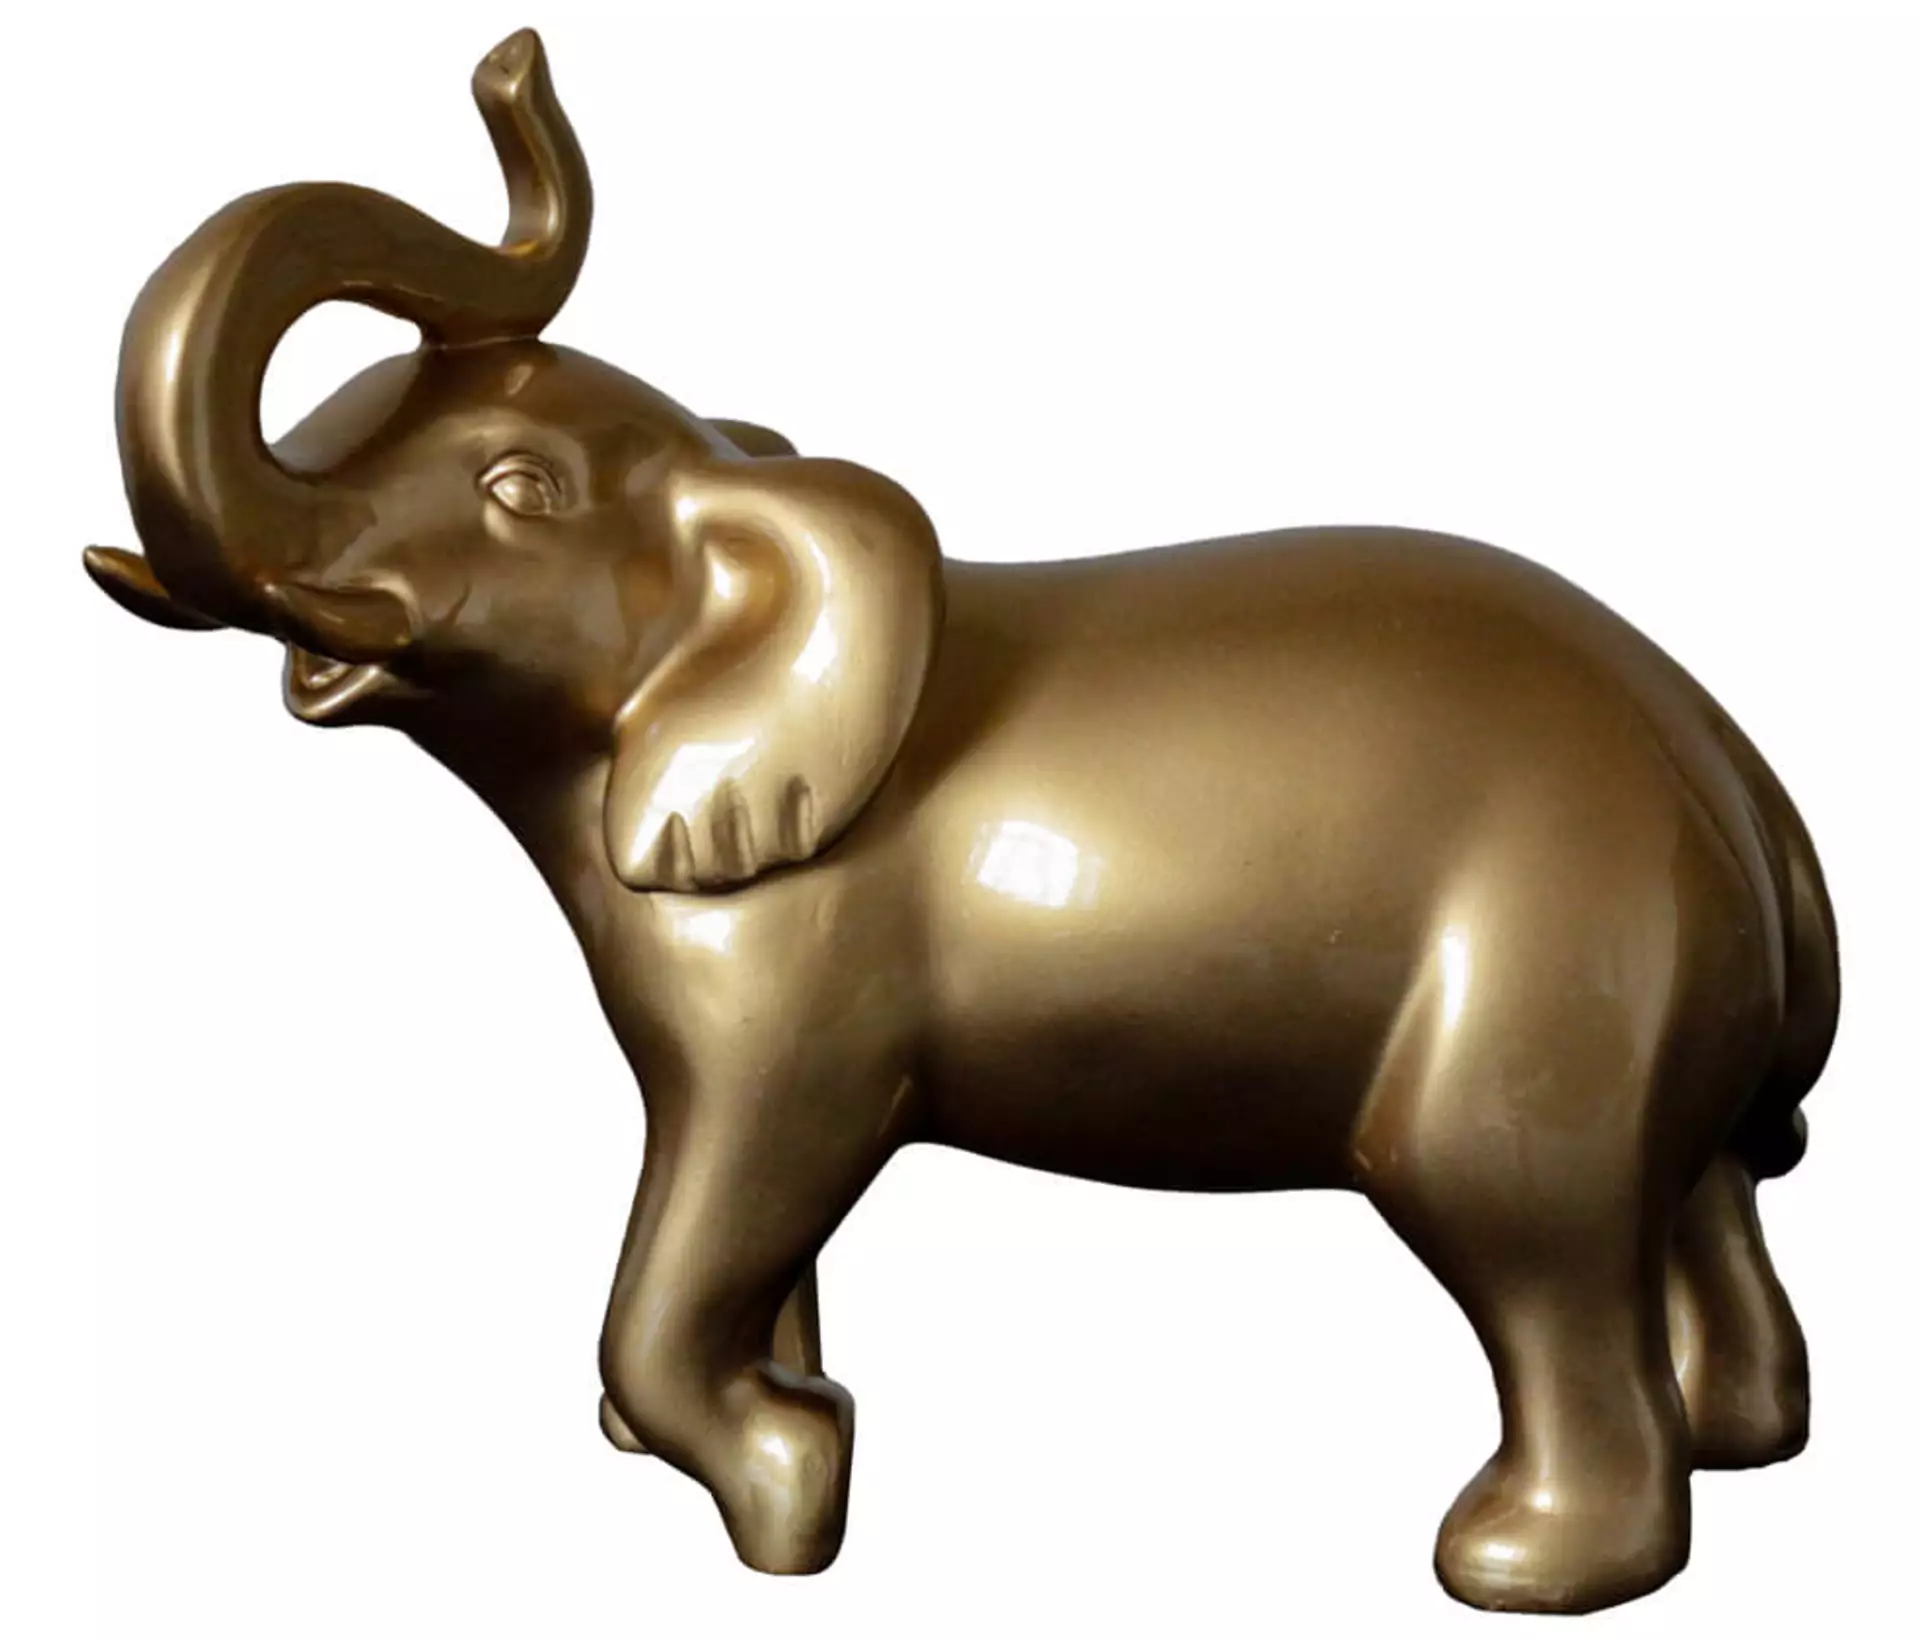 Skulptur Goldener Elefant image LAND